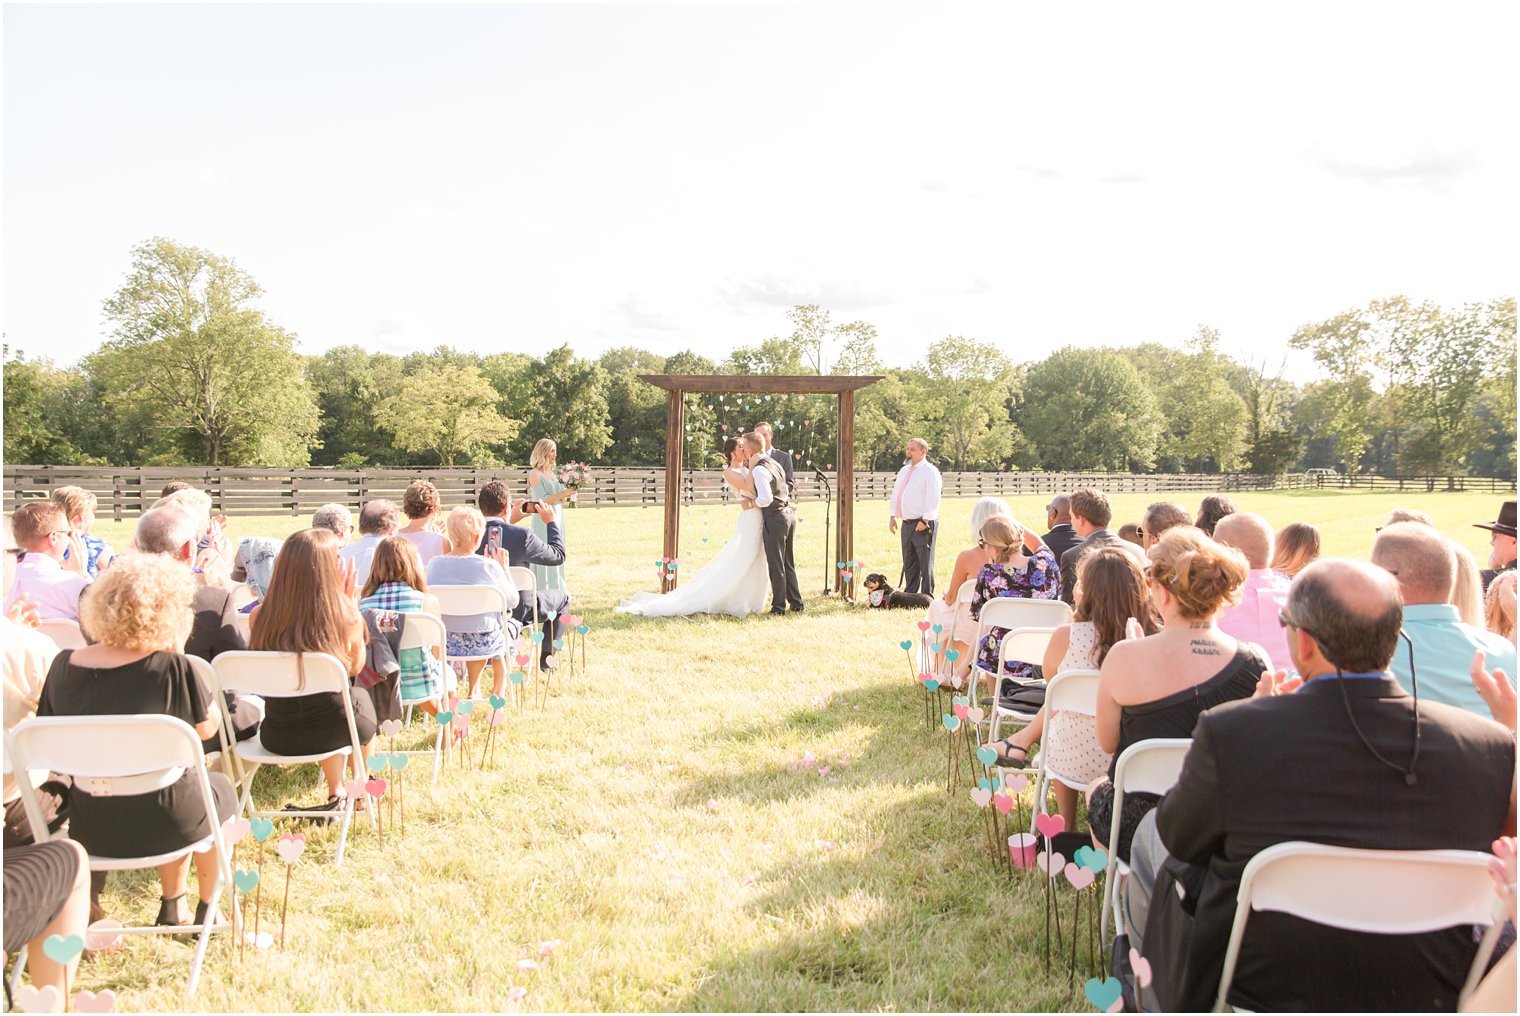 Wedding ceremony at Stone Rows Farm in Stockton NJ